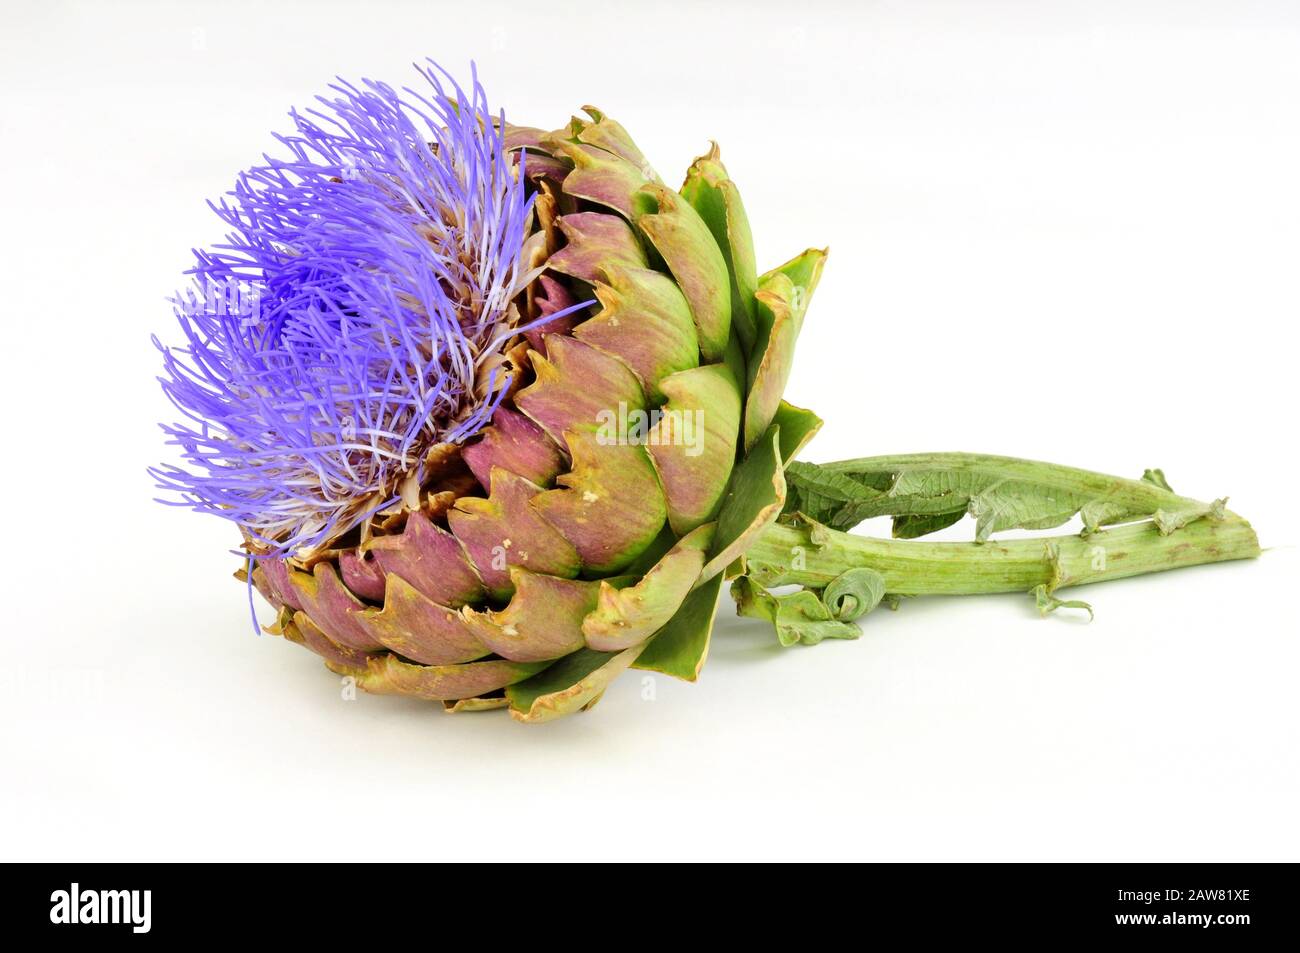 Flowering globe artichoke flower, also known as green artichoke and French artichoke Stock Photo